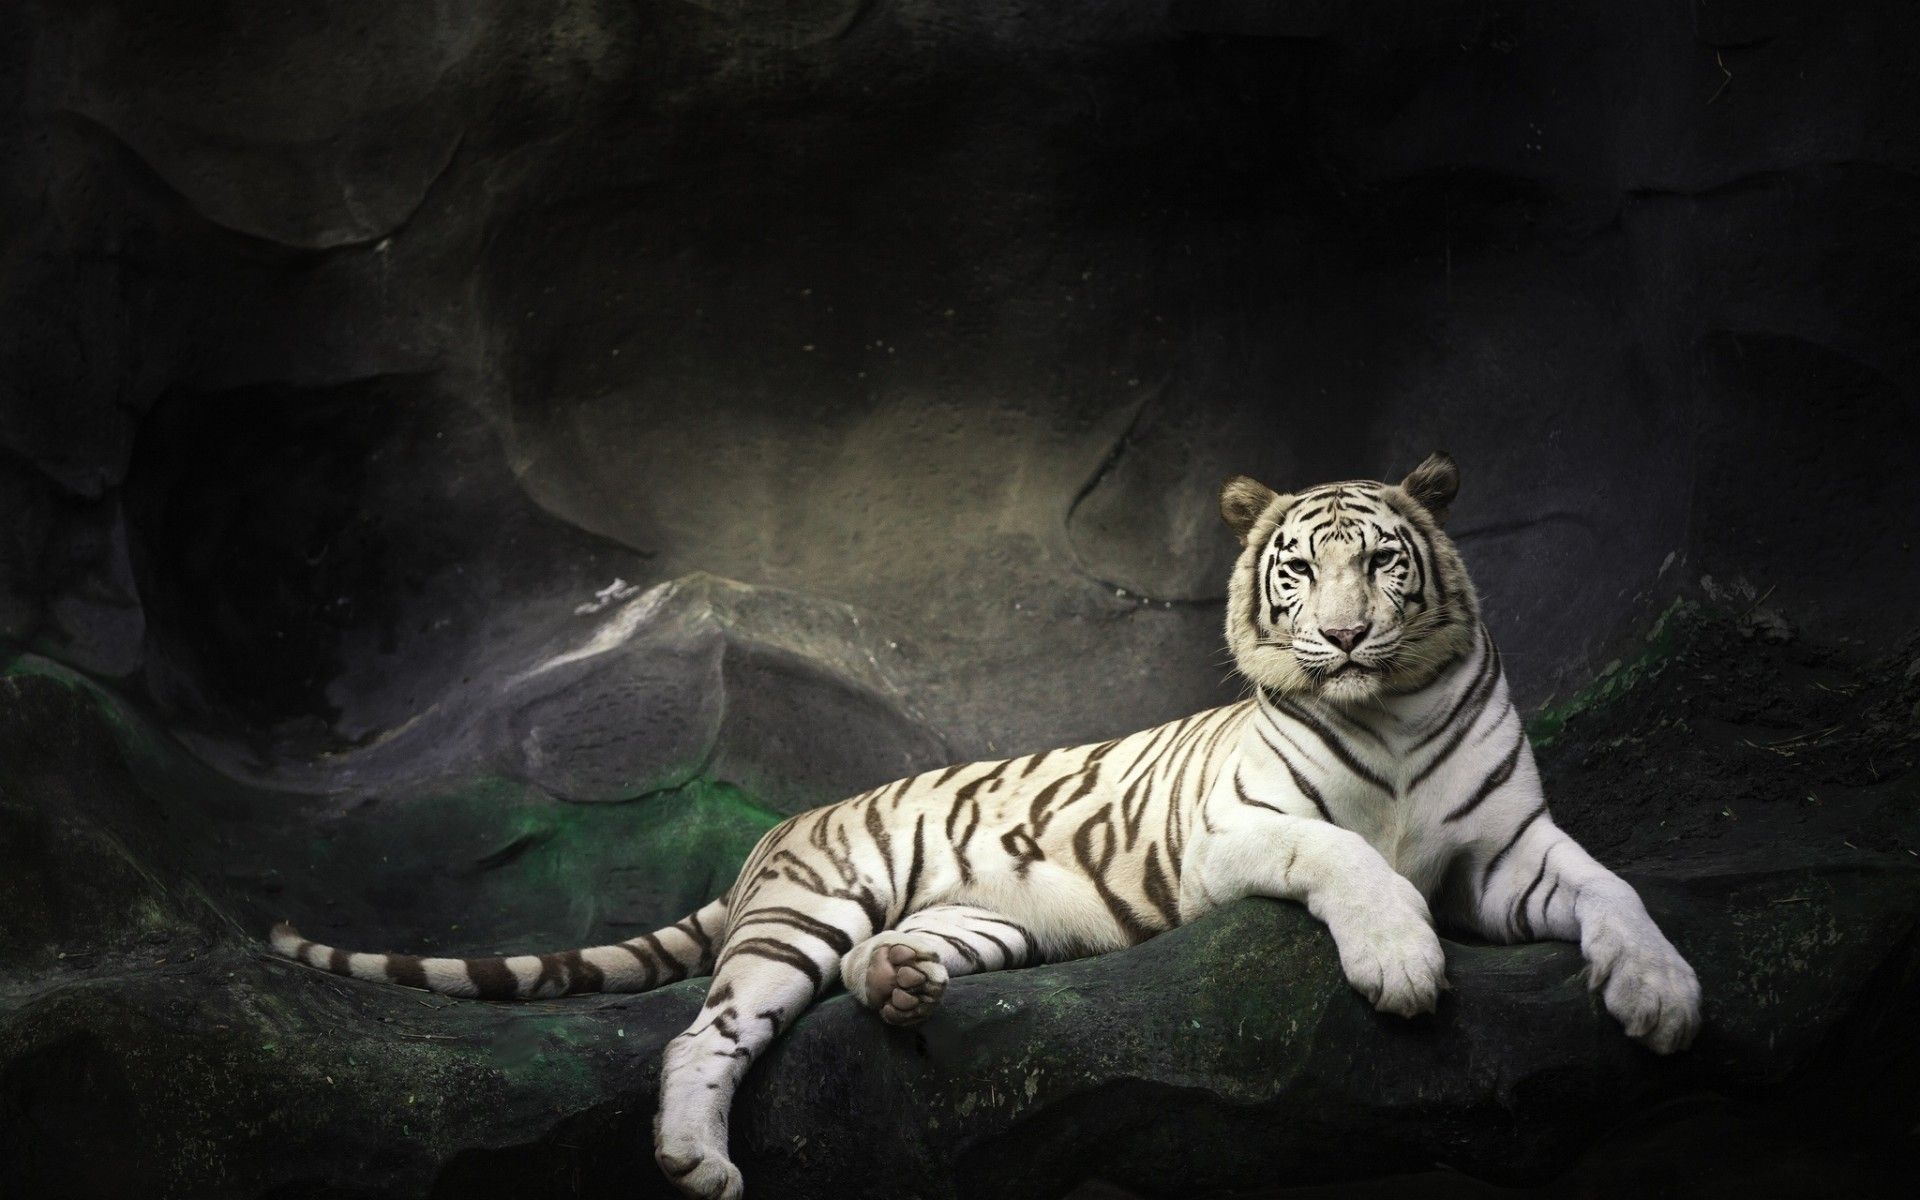 HD White Tiger Wallpaper